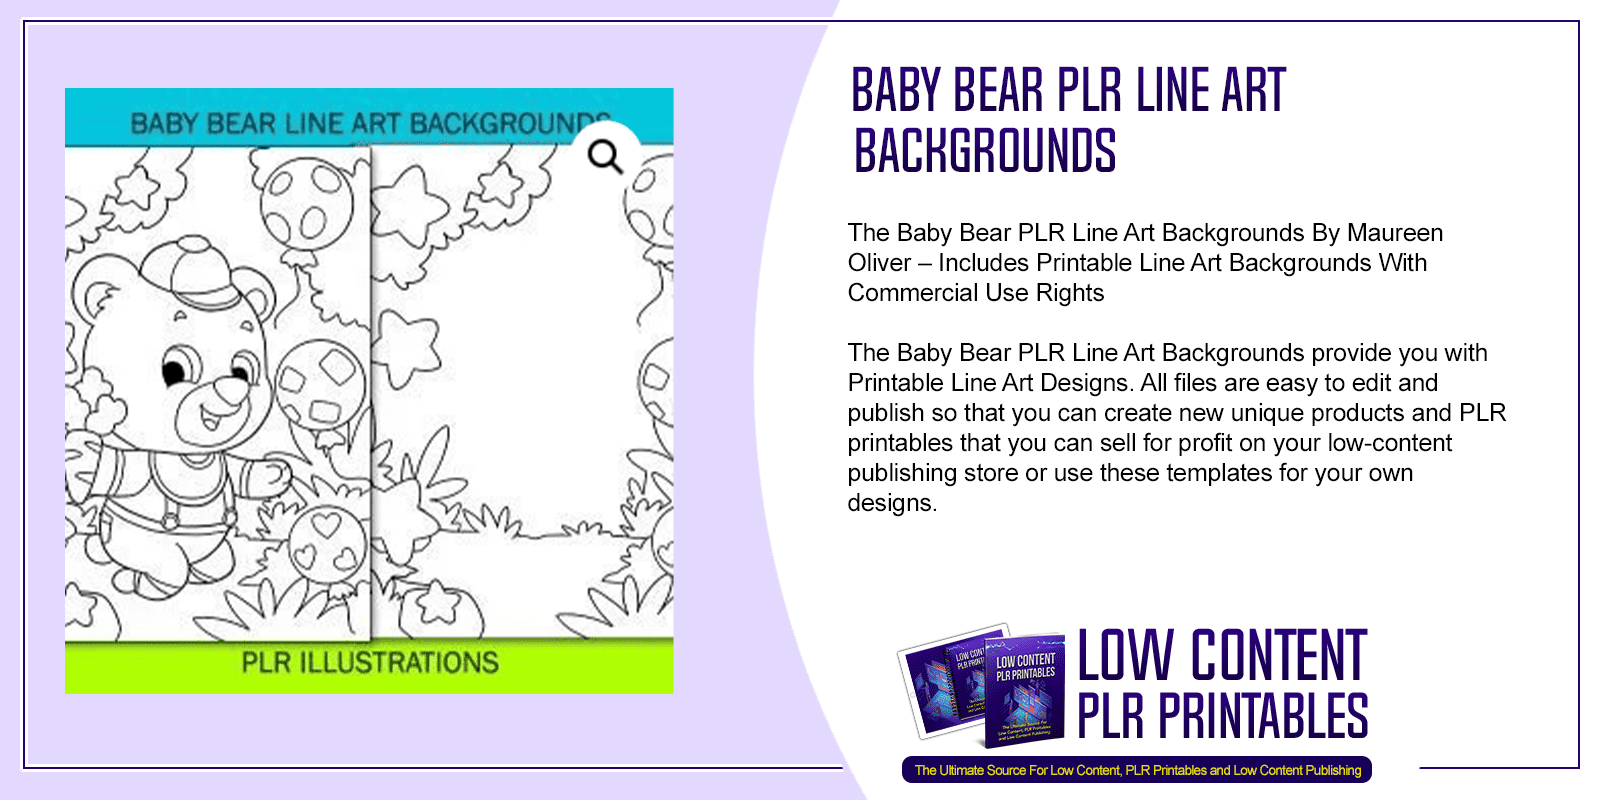 Baby Bear PLR Line Art Backgrounds